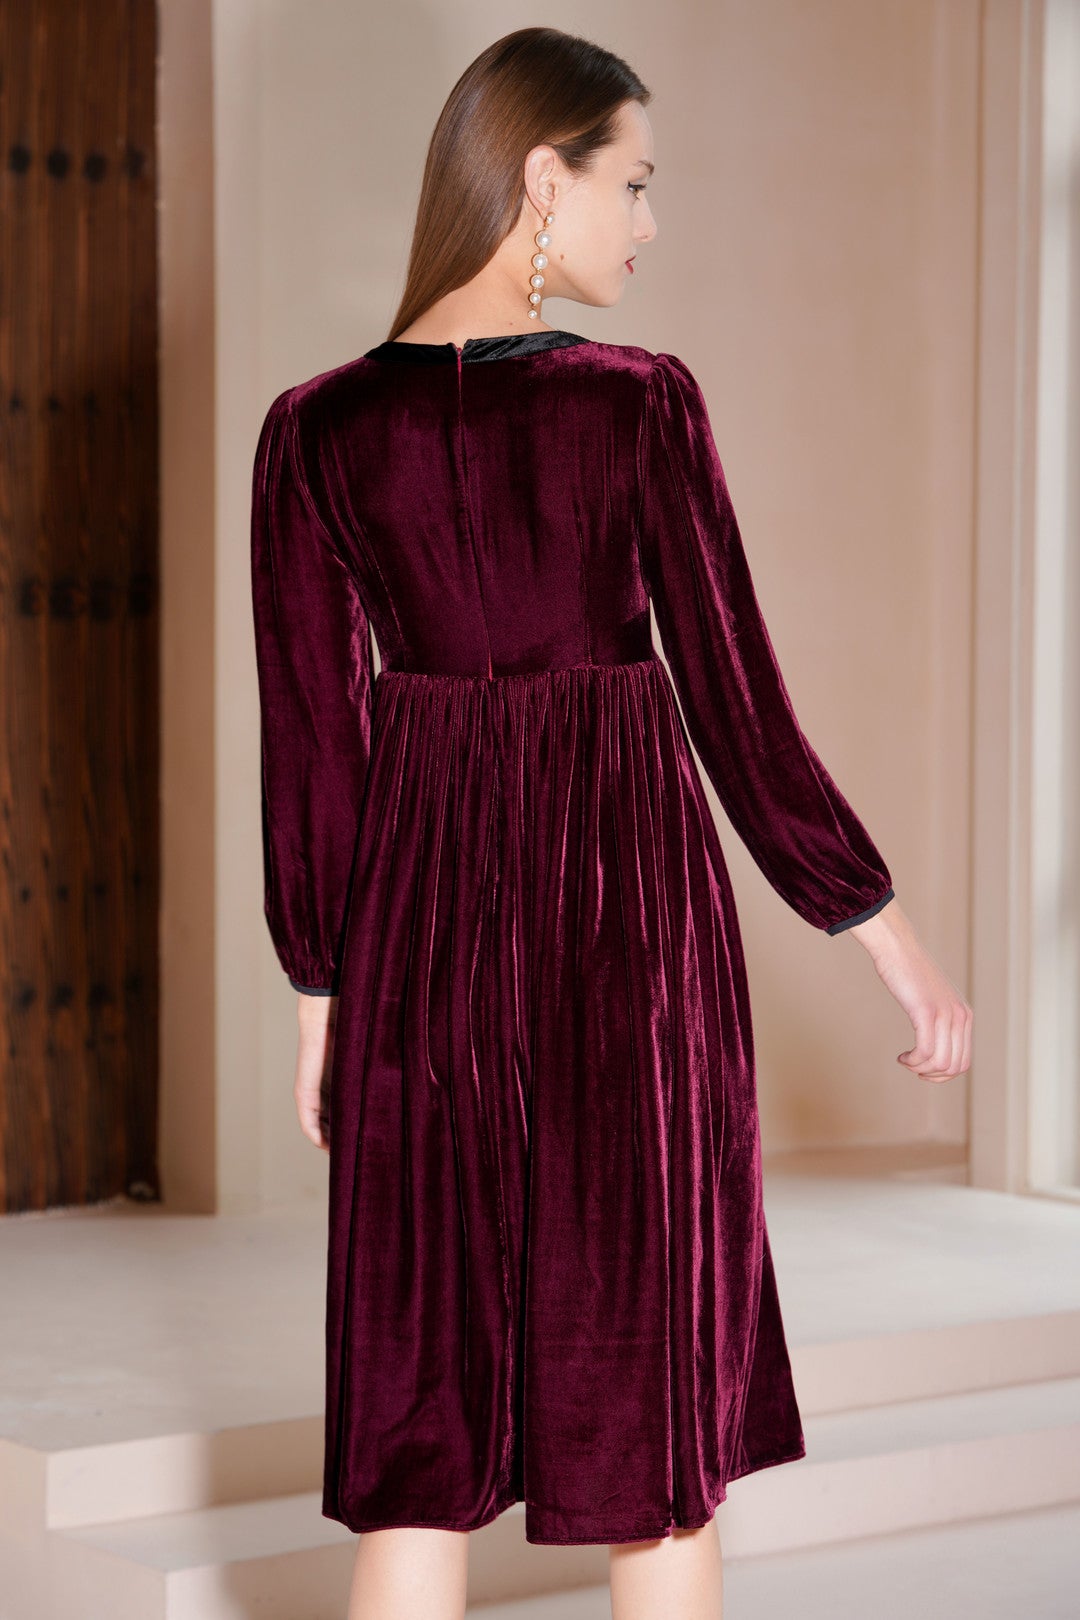 UUNIQ GATSBY Burgundy Velvet Midi Dress